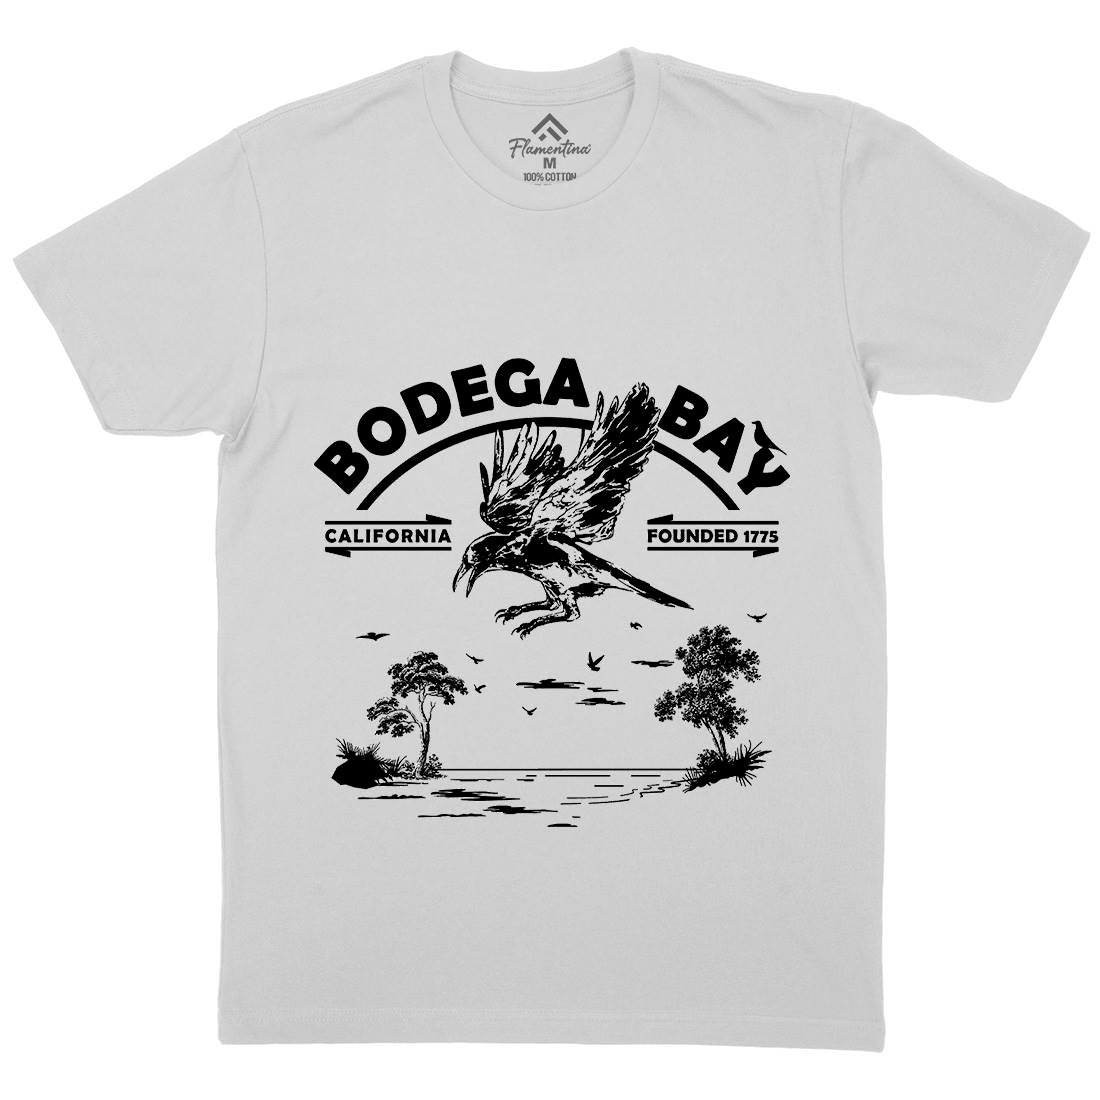 Bodega Bay Mens Crew Neck T-Shirt Horror D310